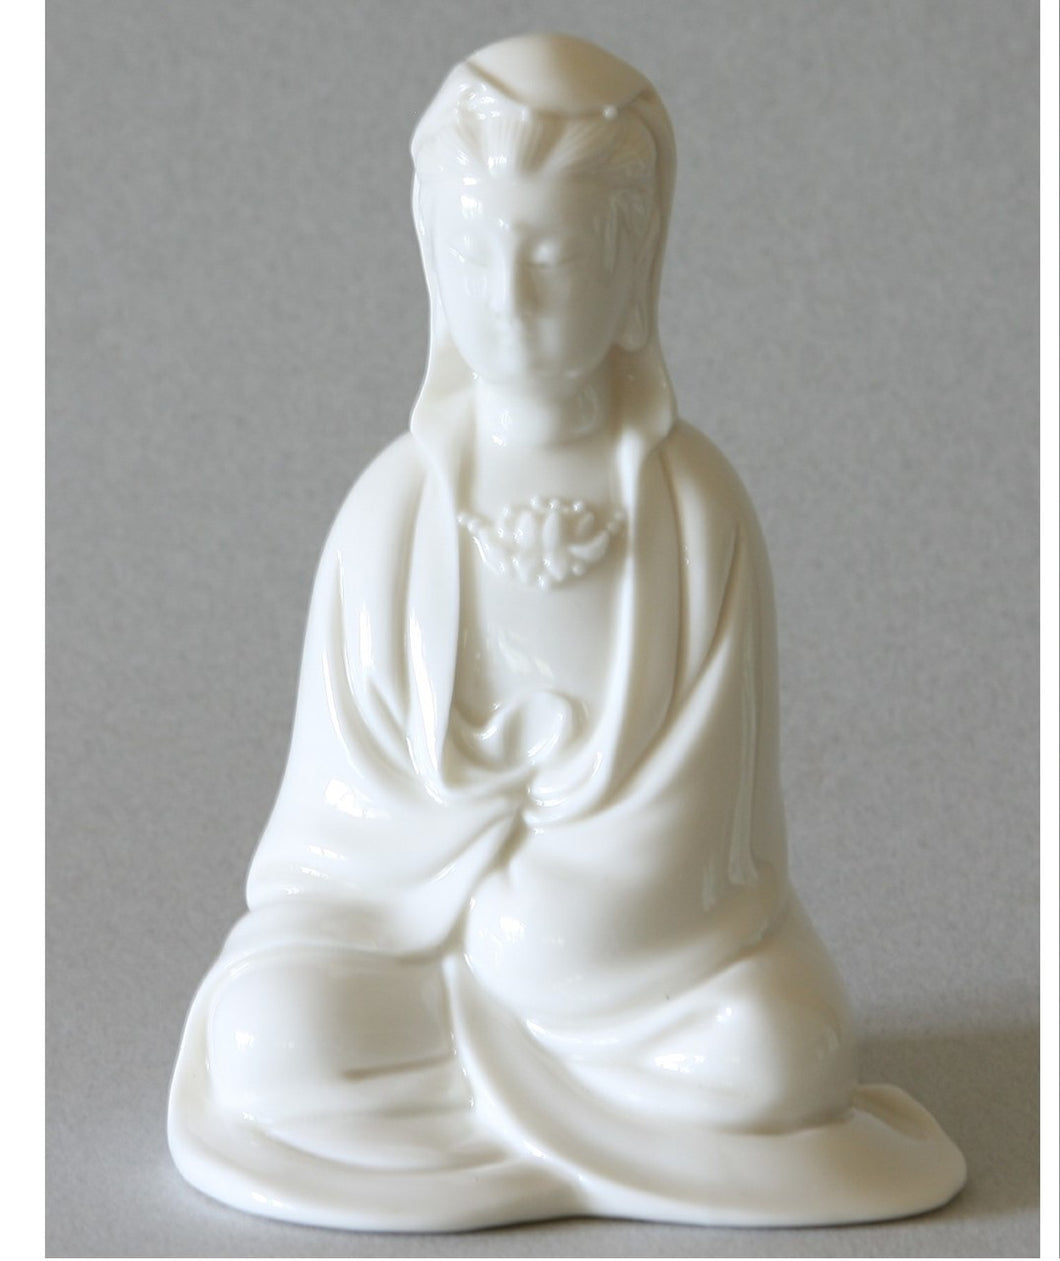 Seated Kwan Yin figurine in Cloak Blanc de Chine